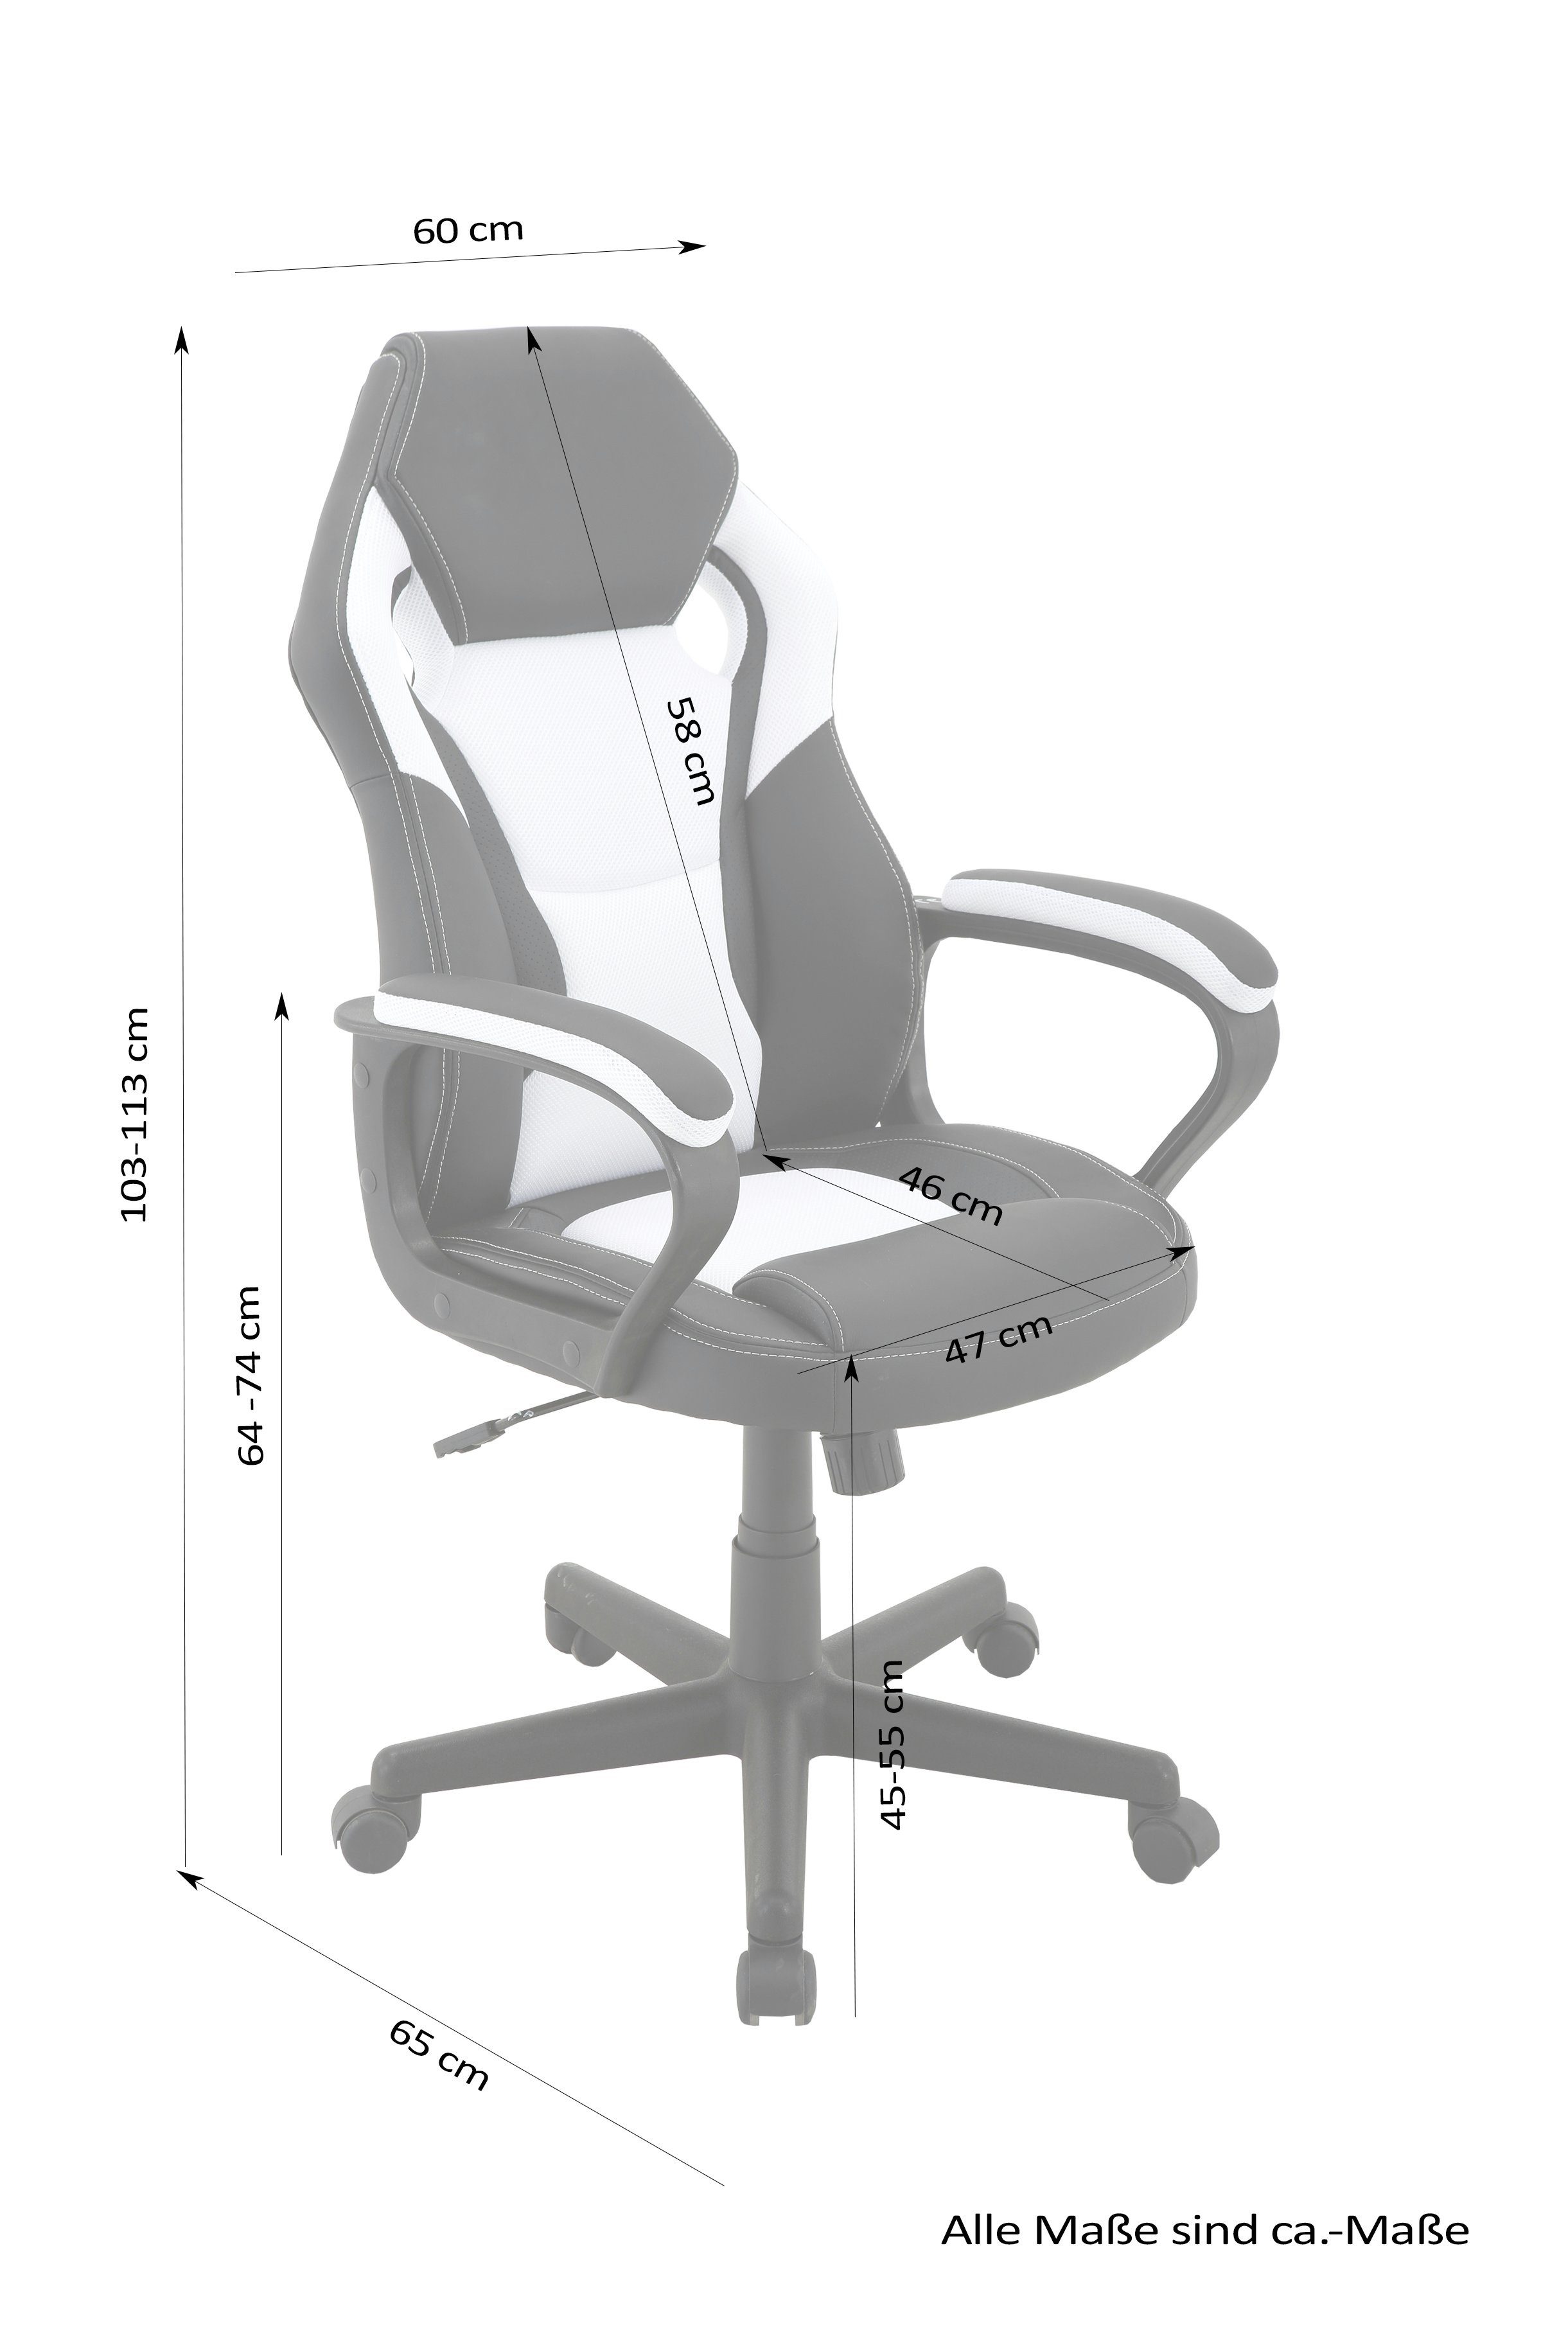 Farben Gaming Chair, schwarz/rot Matteo, byLIVING verstellbarer verschiedenen in Gaming-Stuhl